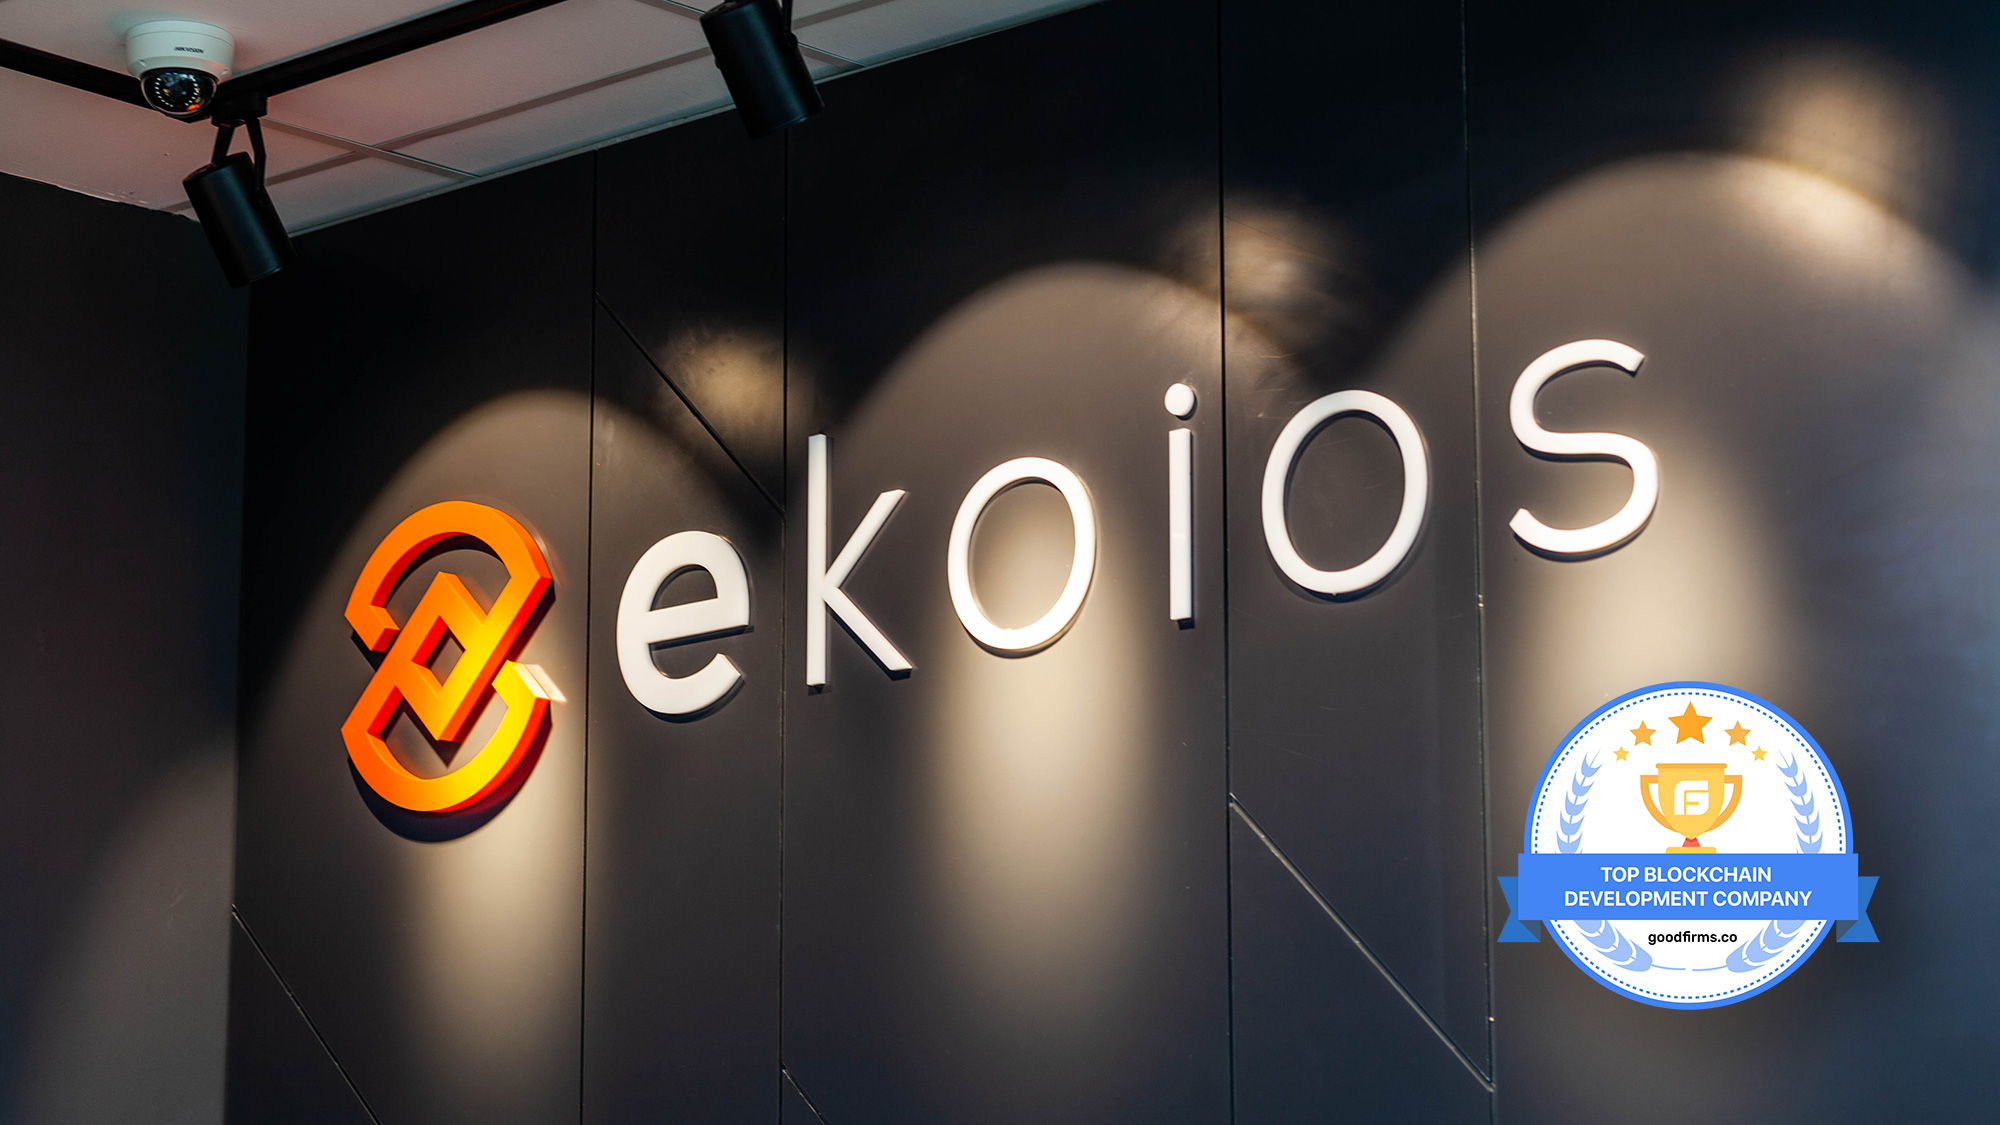 Ekoios 新しいテクノロジーによる堅牢なブロックチェーンソリューションを提供し、GoodFirmsで急成長